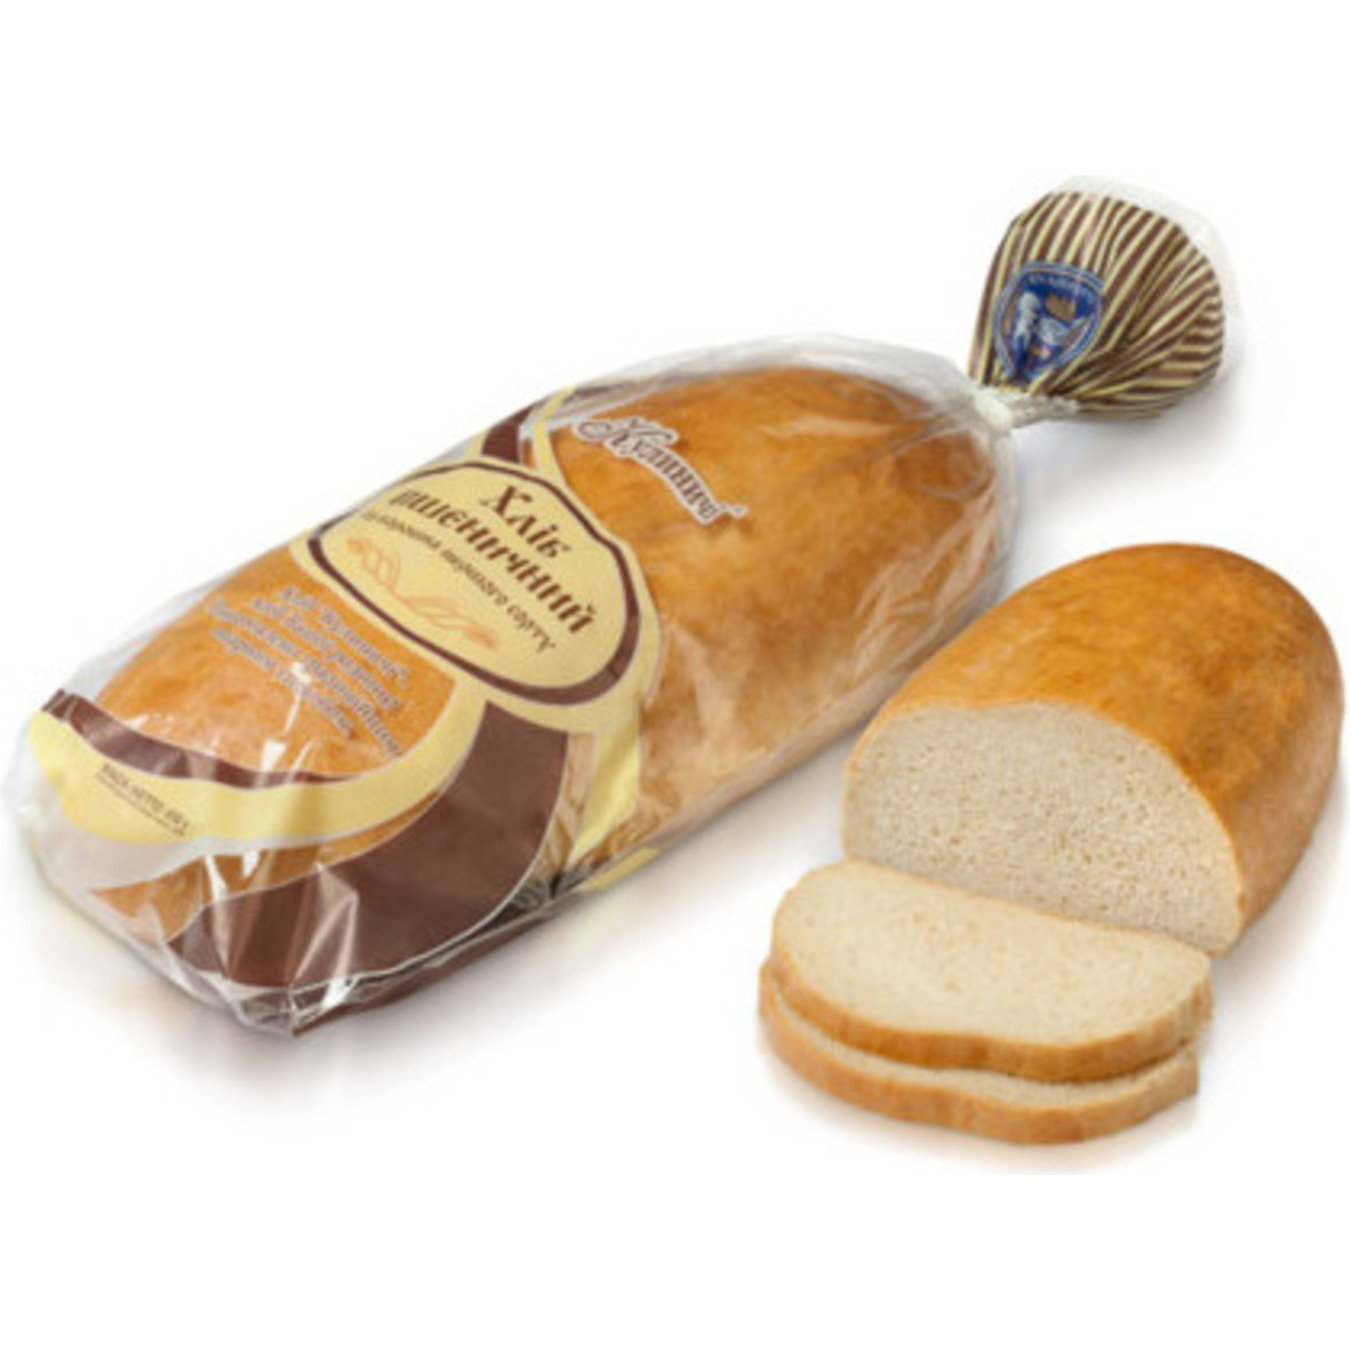 Хліб Кулиничі пшеничний із борошна першого сорту 650г